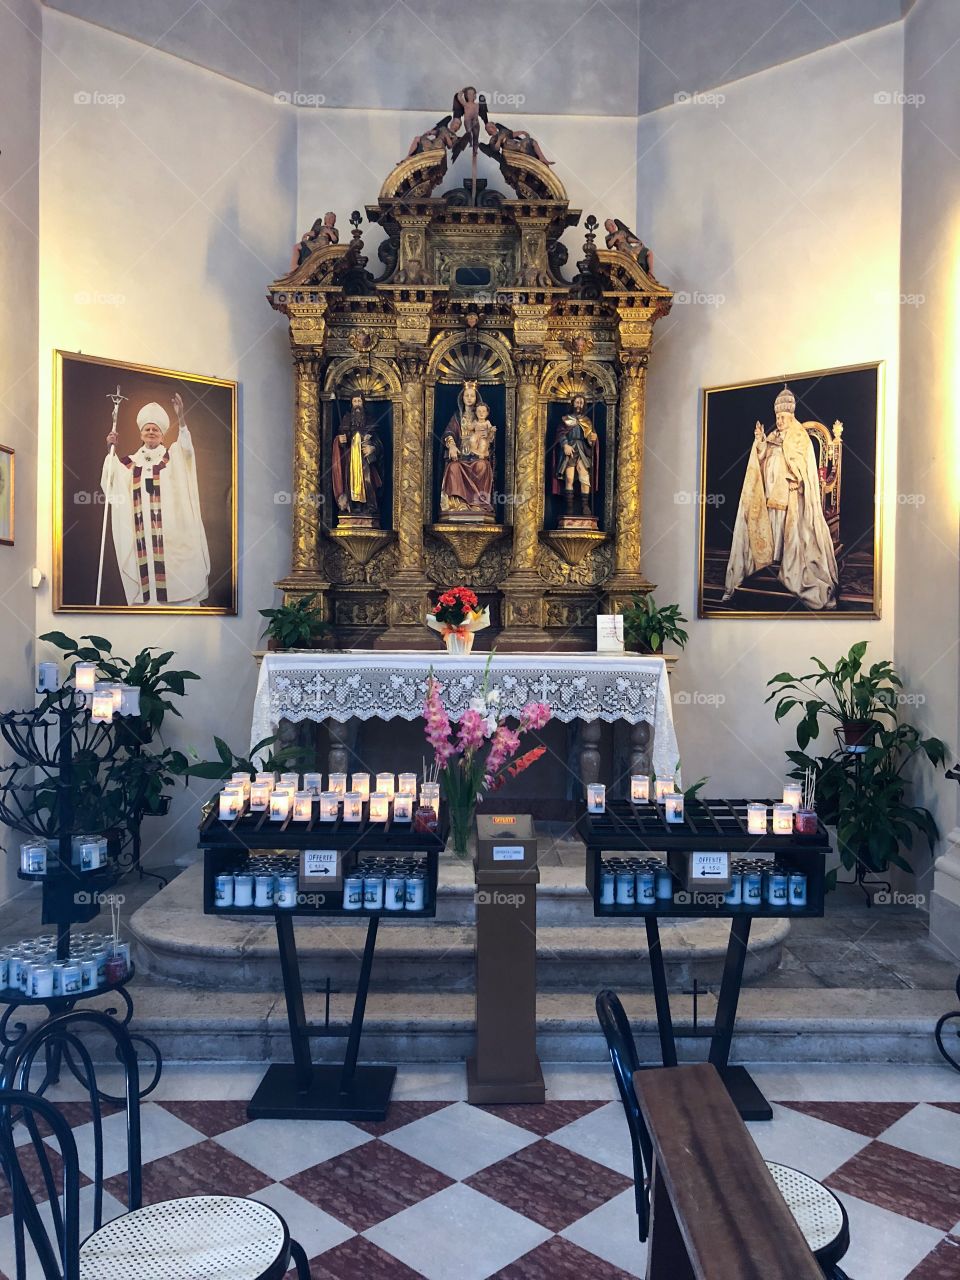 Side Altar of Madonna del Monte de Marsure church in Aviano, Italy